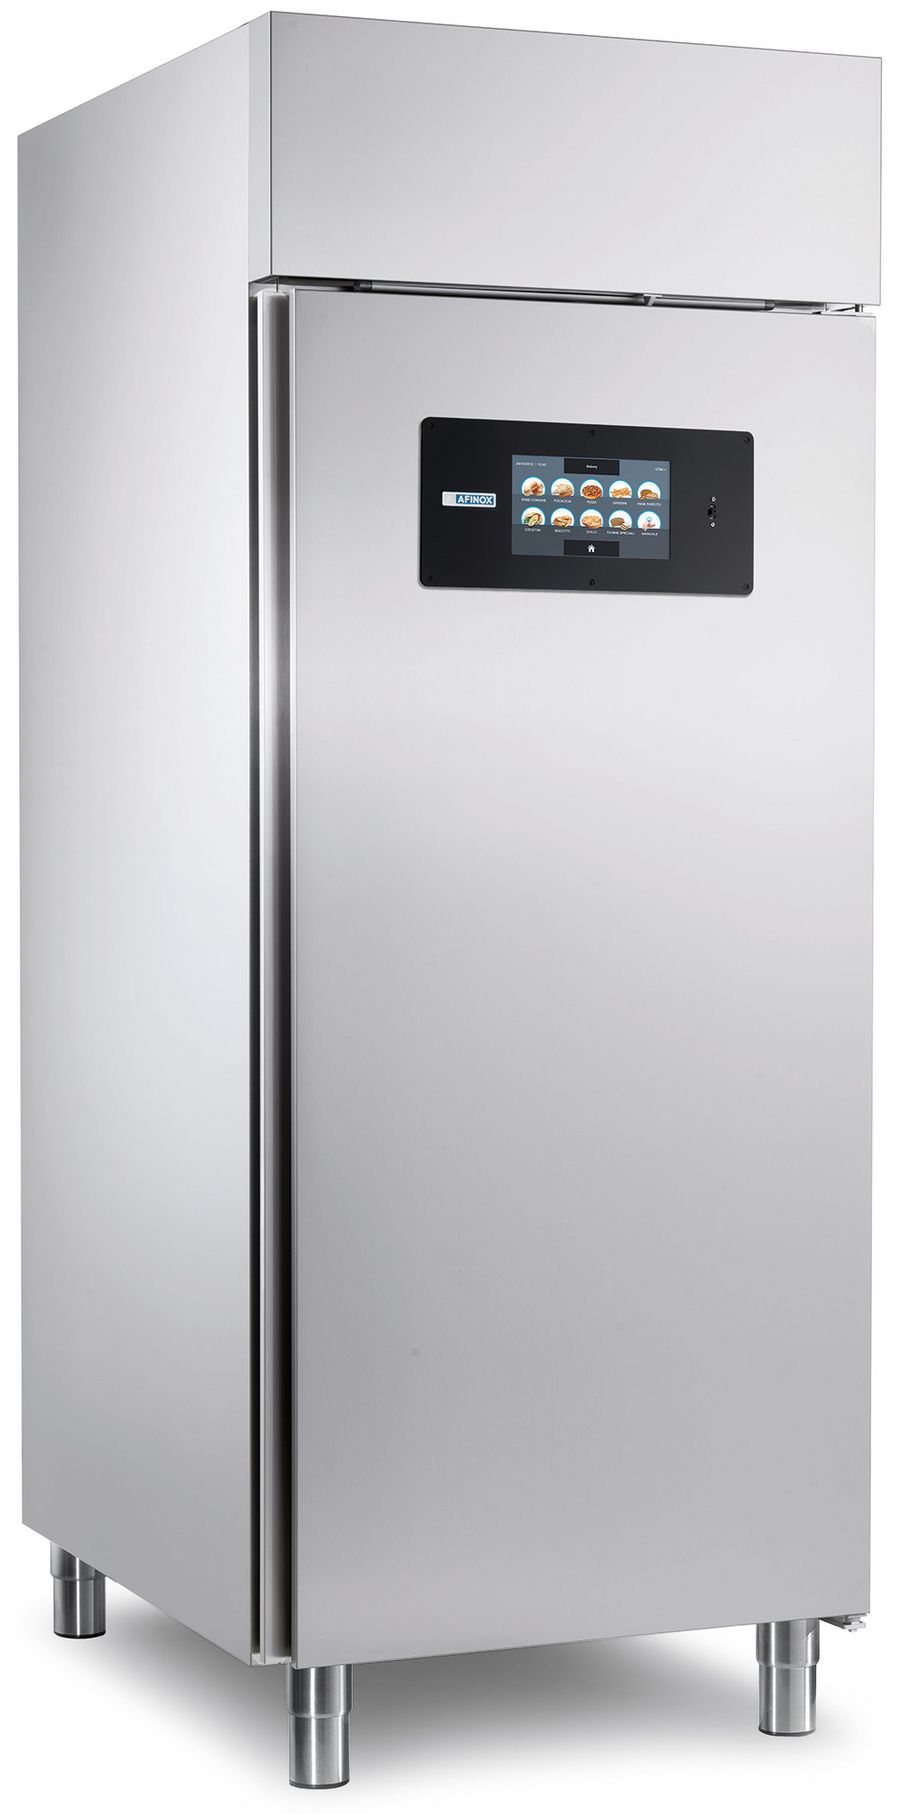 Afinox stellt praxisorientierte Kühlgeräte her